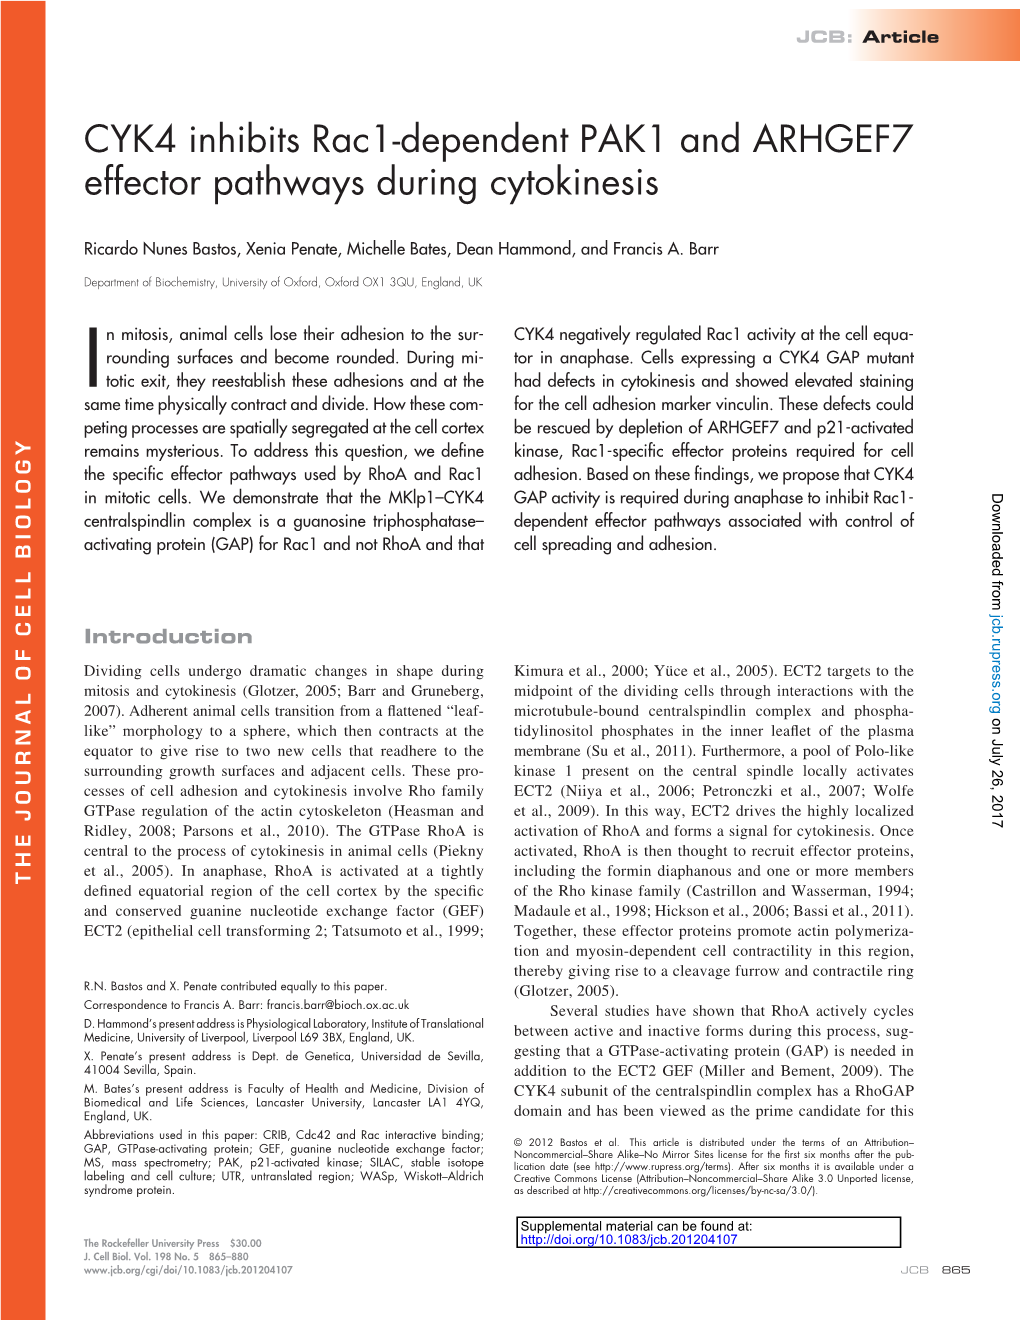 CYK4 Inhibits Rac1-Dependent PAK1 and ARHGEF7 Effector Pathways During Cytokinesis